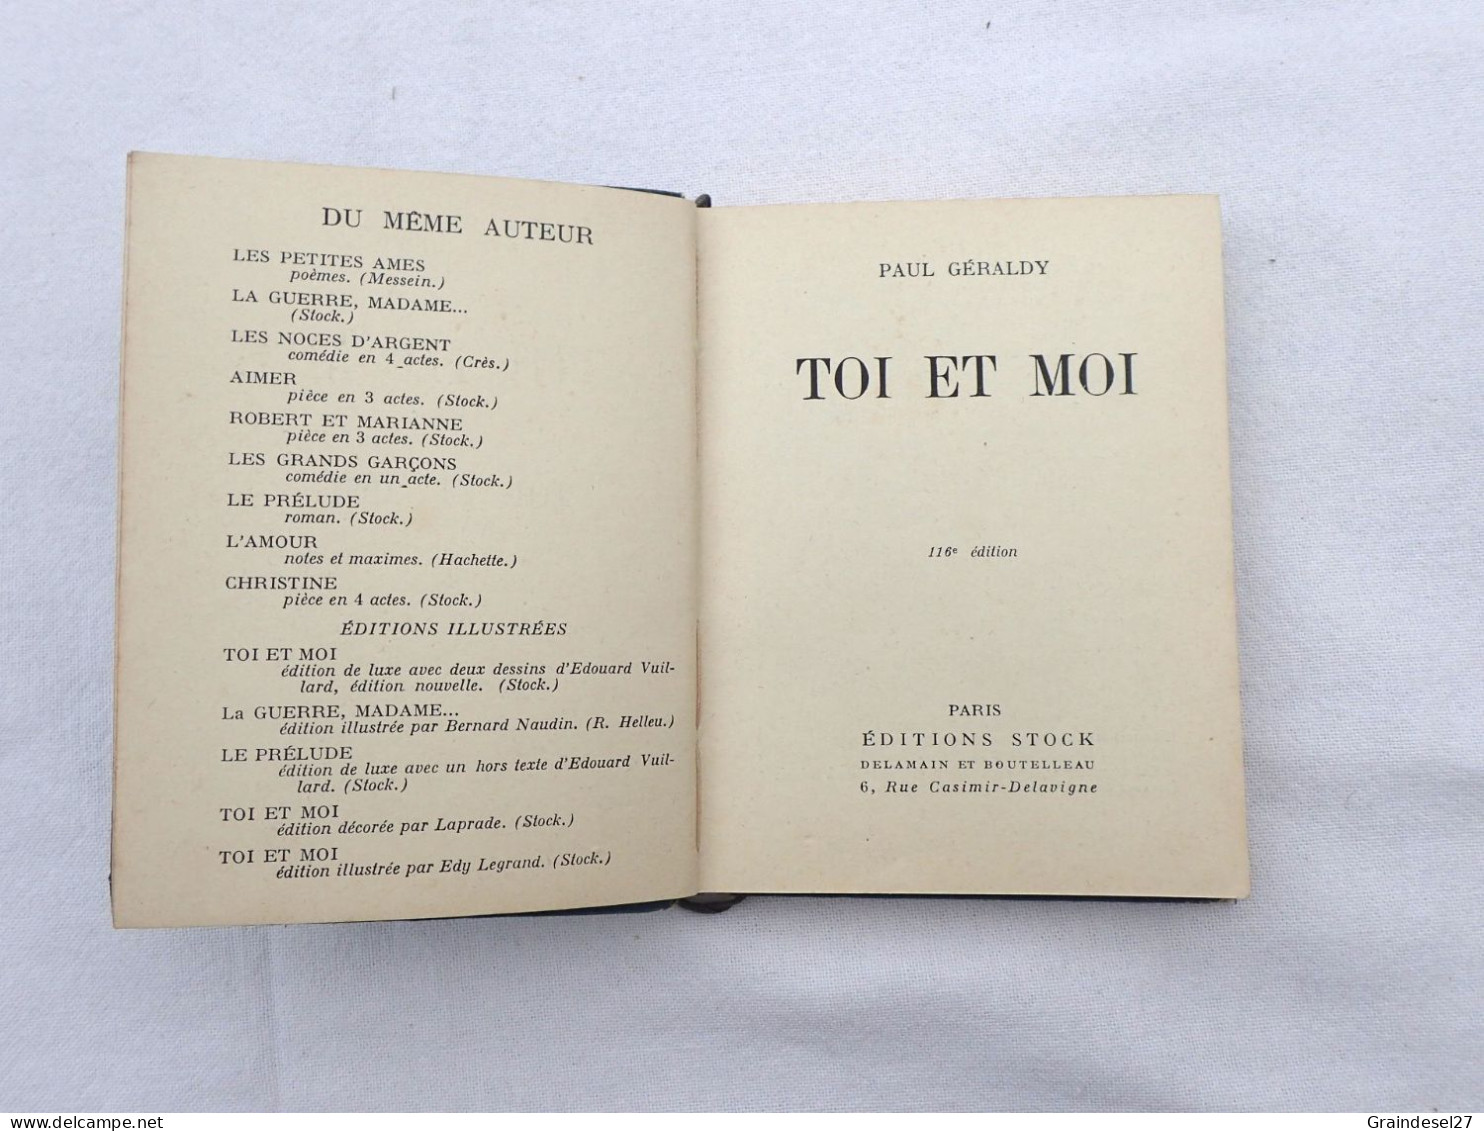 Livre "Toi et moi" de Paul Geraldy recueil de poésie, Editions Stock 1943